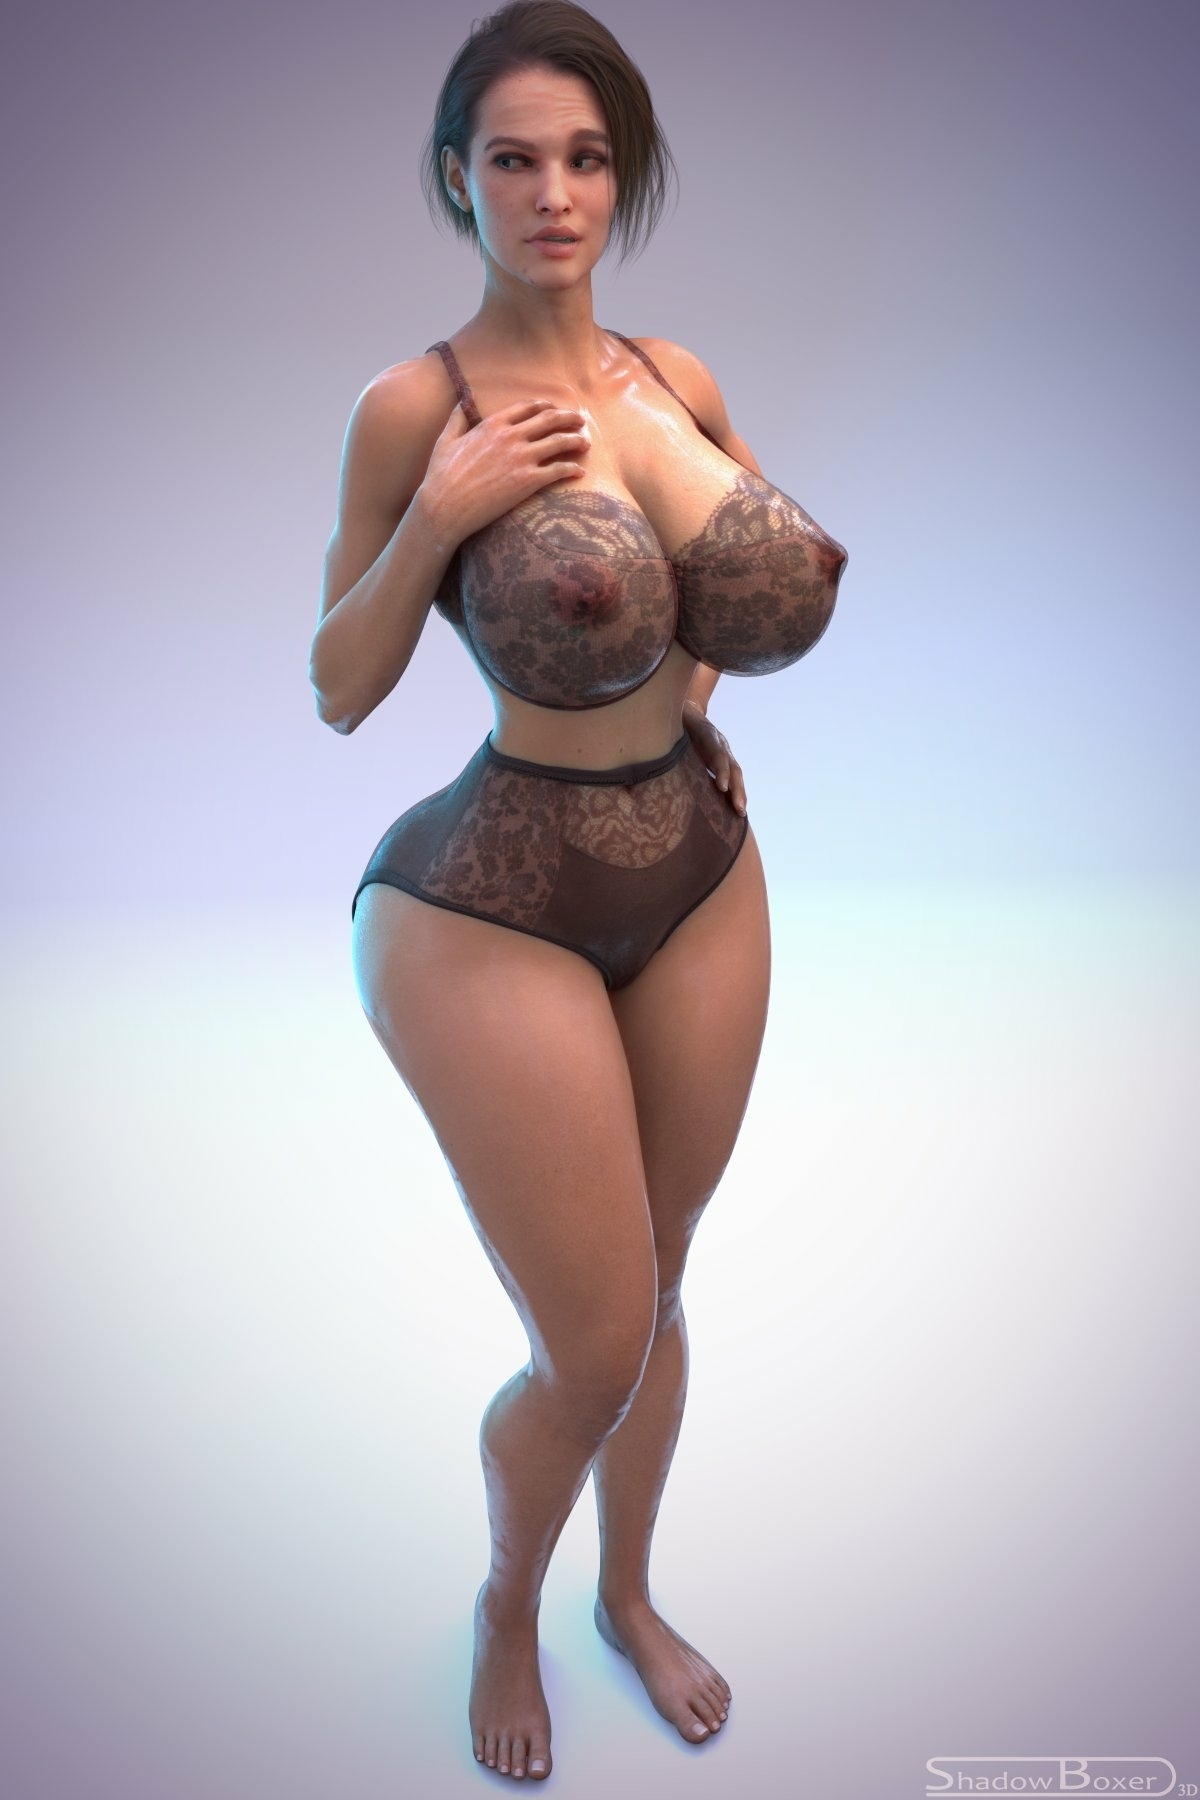 😳Jill lingerie shoot Jill Valentine Resident Evil Lingerie Sexy Lingerie Nipples Boobs Big boobs Cake Ass Big Ass Big Tits Tits Sexy Horny Face Horny 3d Porn